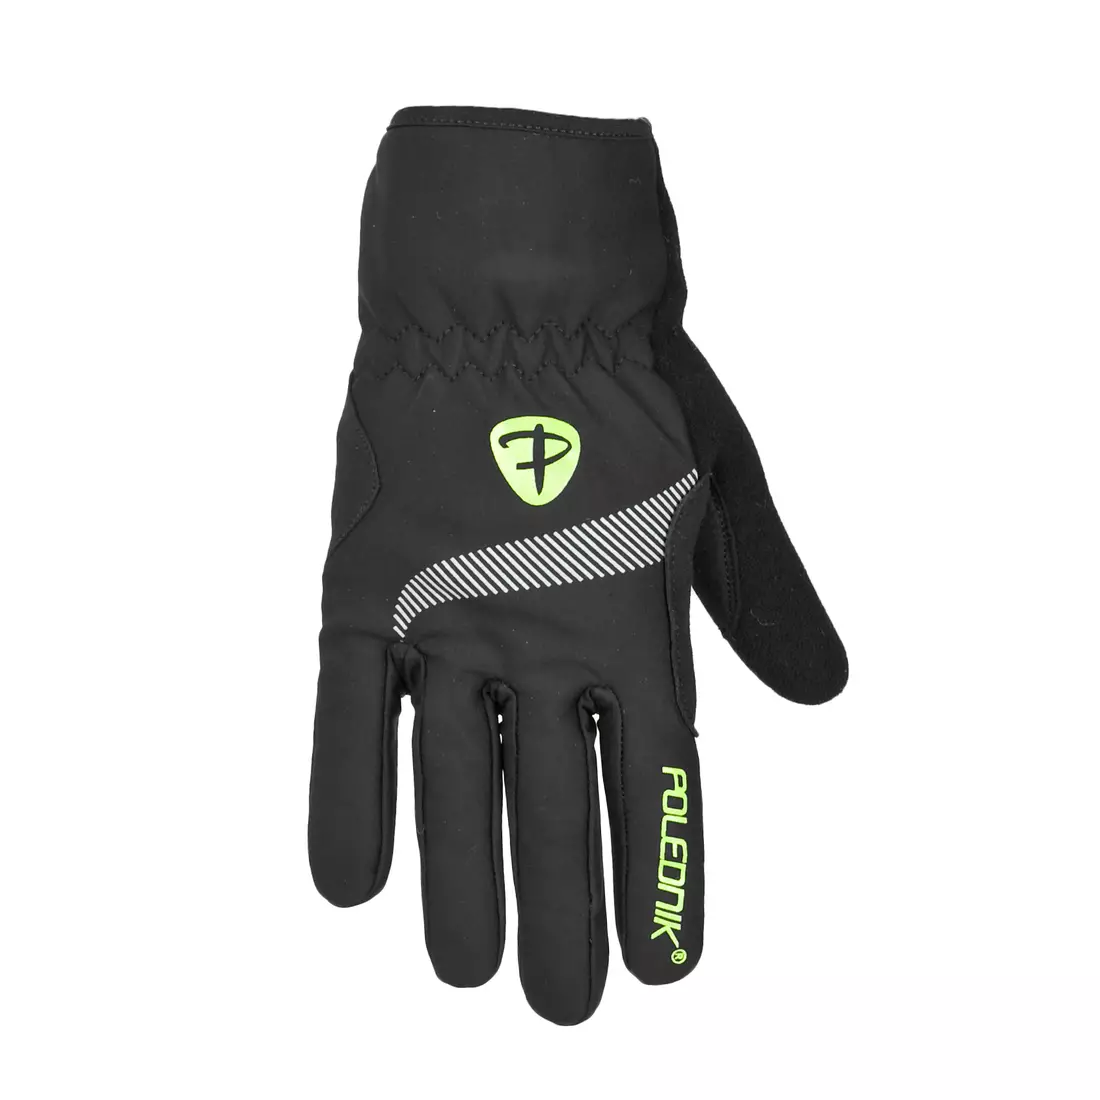 POLEDNIK WSA gloves, color: black